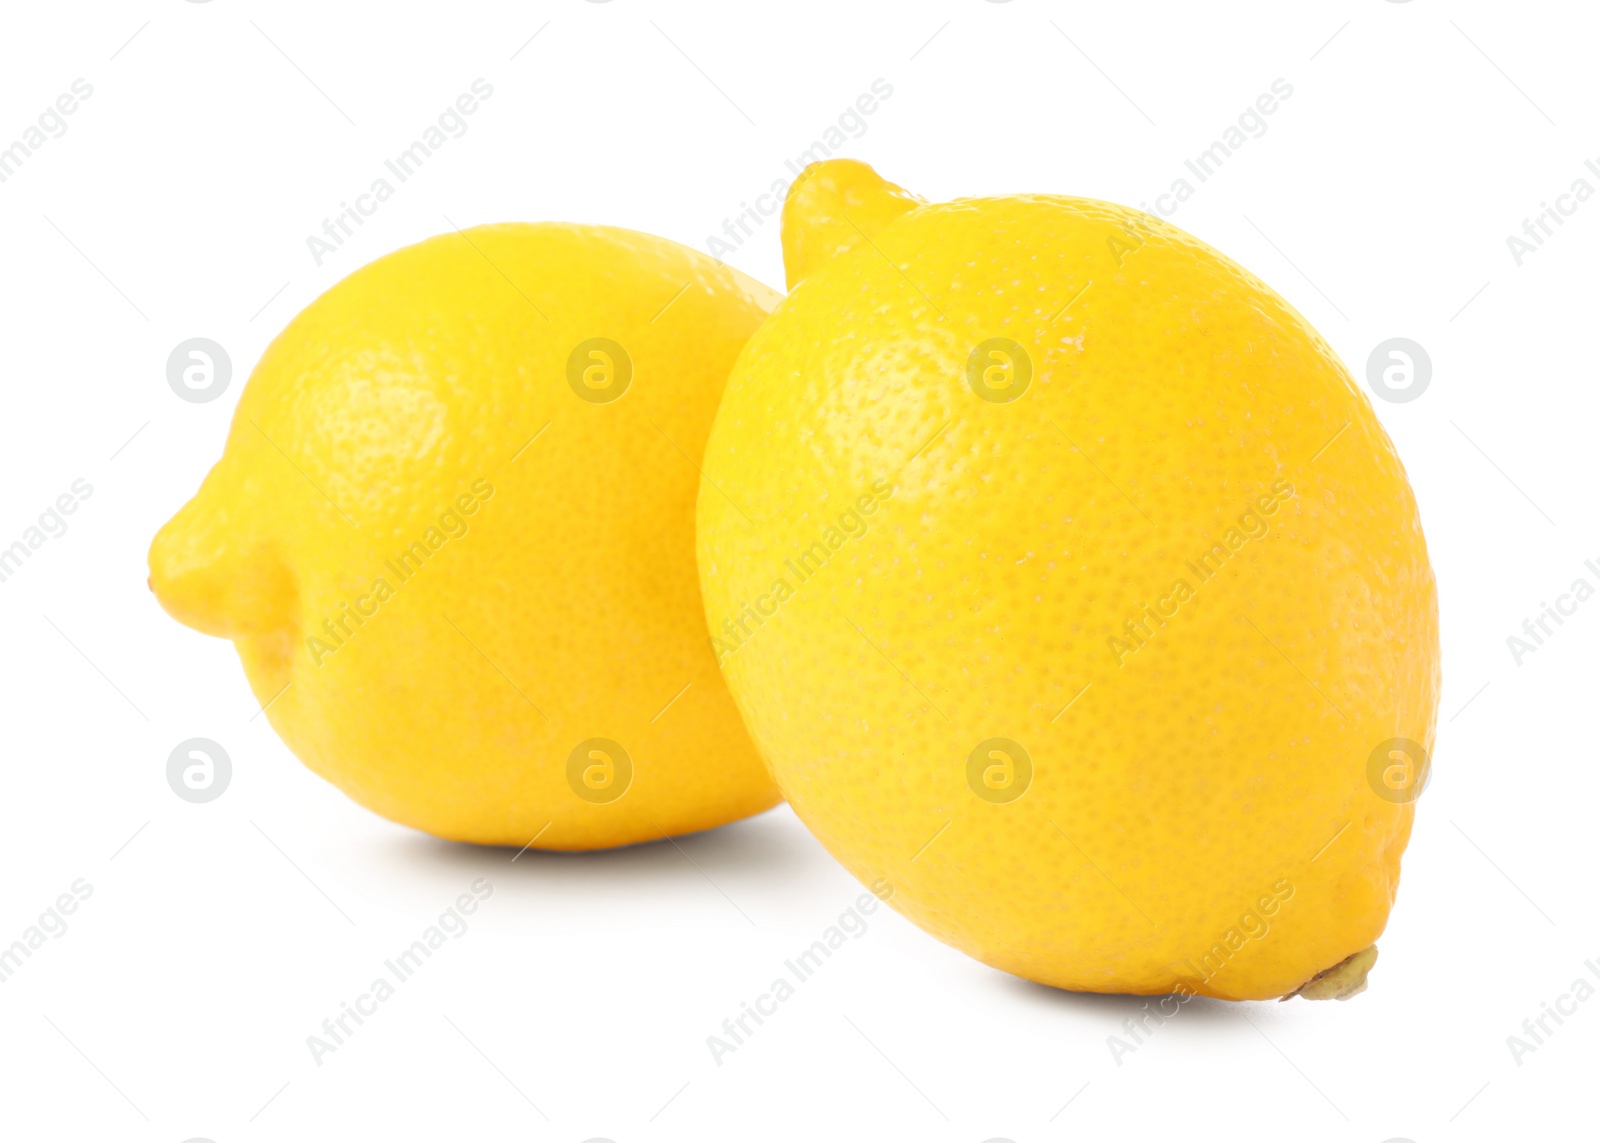 Photo of Two fresh ripe lemons isolated on white